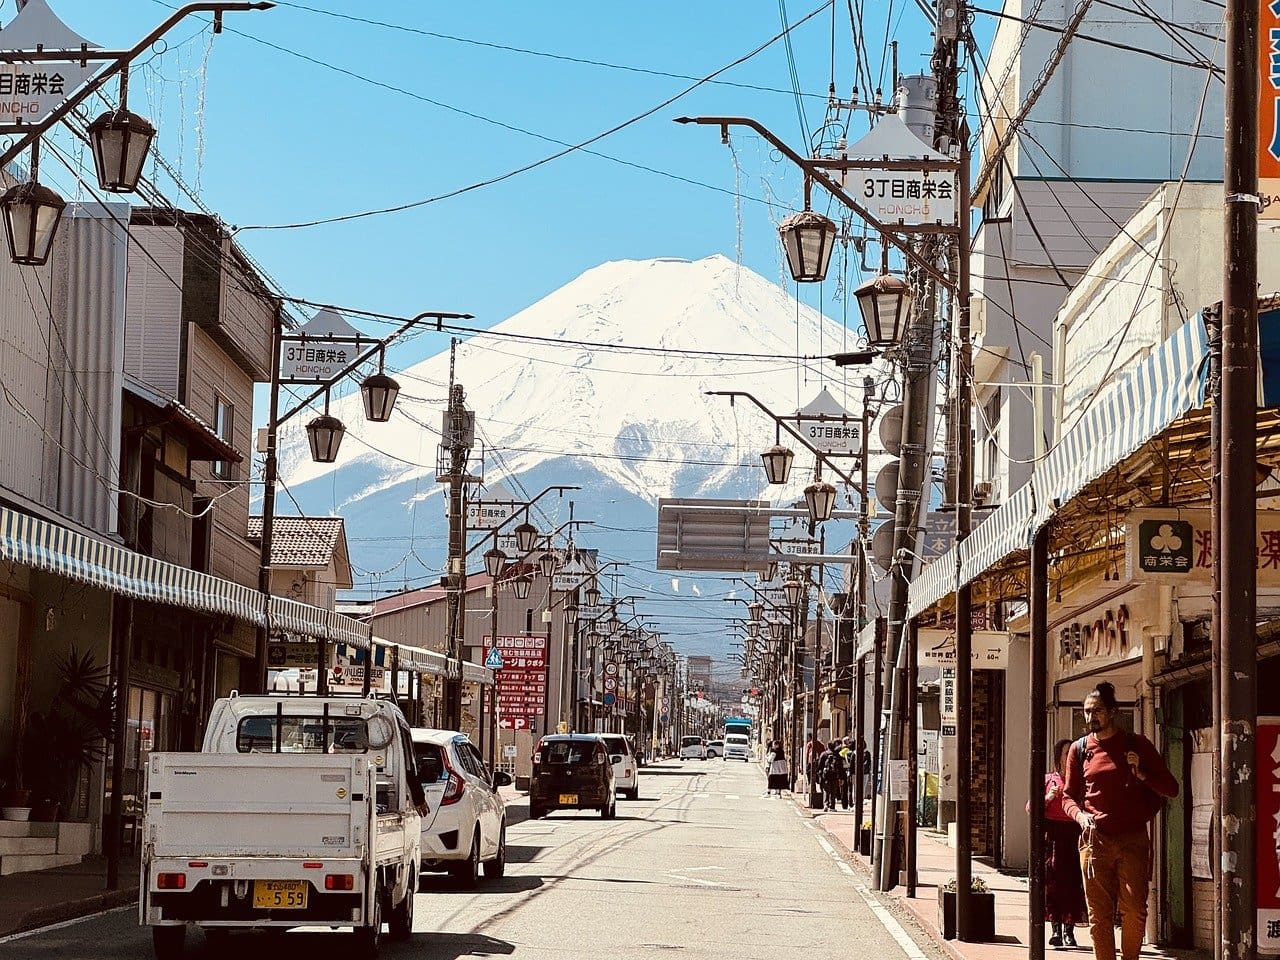 Vista do Monte Fuji (Foto: Pixabay)